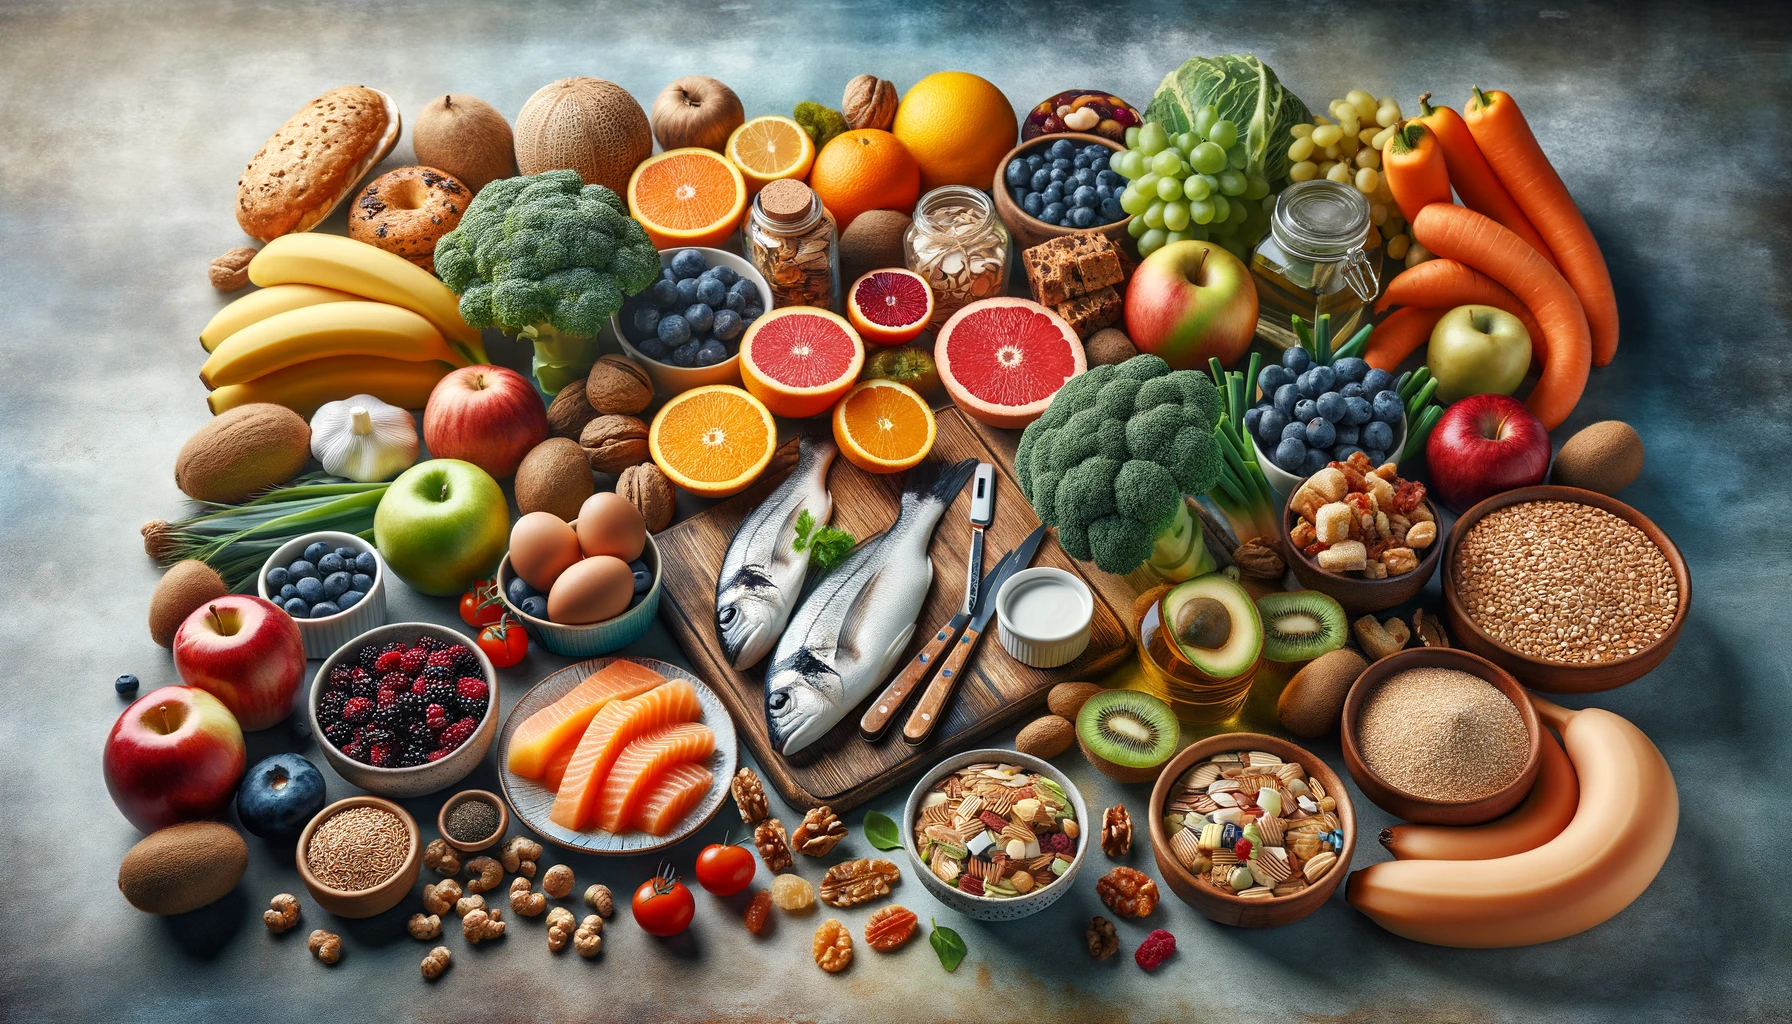 variedad de alimentos saludables y especificos para diabeticos dispuestos artisticamente